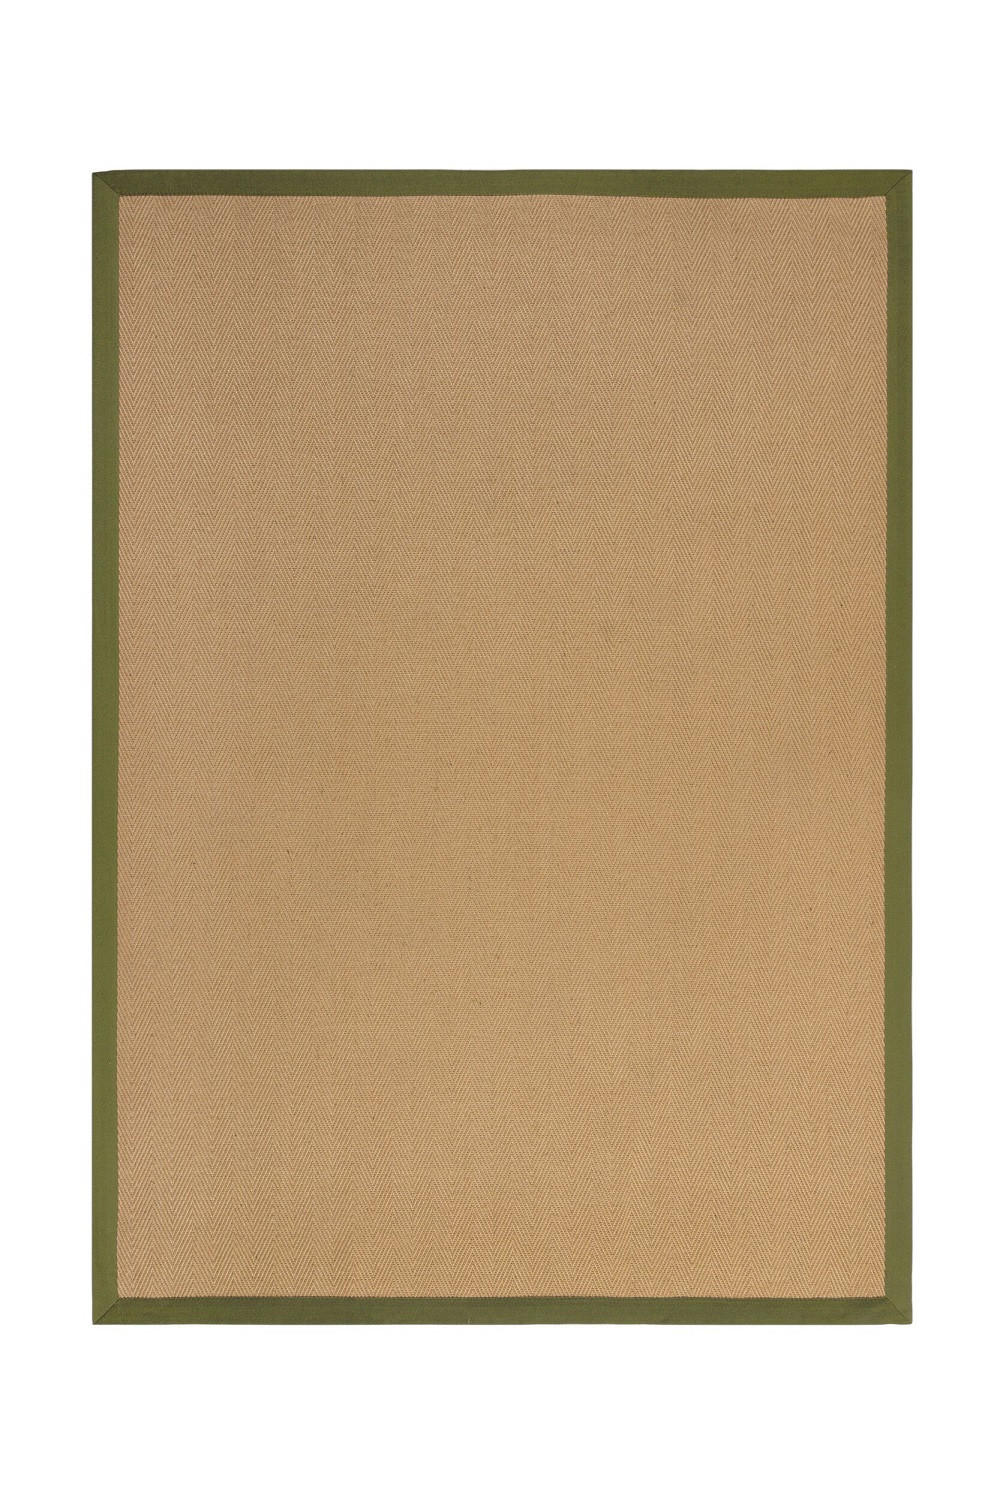 FLACHWEBETEPPICH 200/290 cm Herringbone Border  - Grün, KONVENTIONELL, Naturmaterialien/Textil (200/290cm)